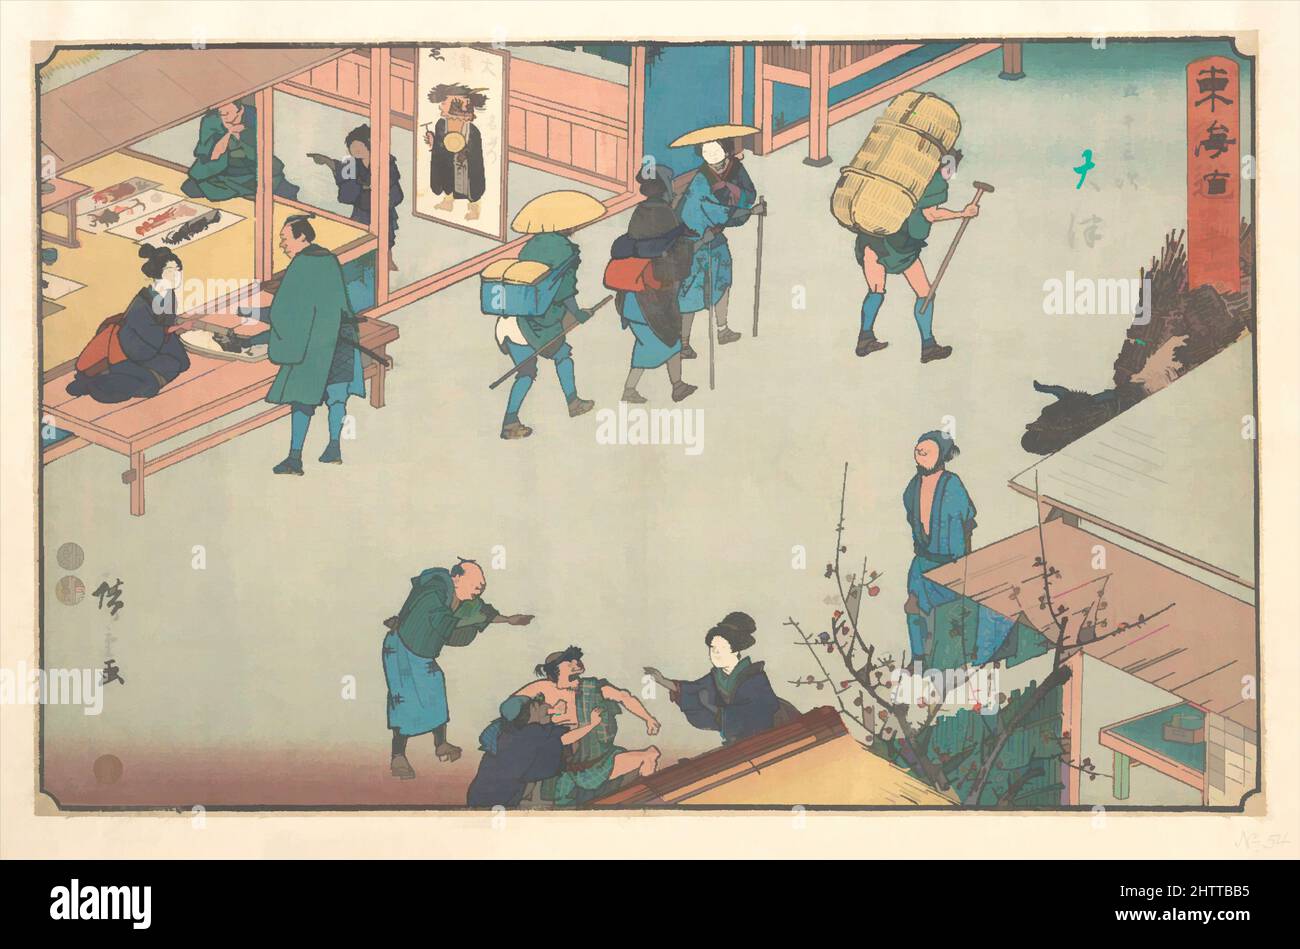 Art inspiré par Otsu, 東海道五十三次 大津, époque Edo (1615–1868), env. 1840, Japon, impression polychrome sur bois; encre et couleur sur papier, total: 8 3/4 x 13 3/4in. (22,2 x 34,9cm), estampes, Utagawa Hiroshige (japonais, Tokyo (Edo) 1797–1858 Tokyo (Edo)), l'autoroute appelée Tokaido étiré, œuvres classiques modernisées par Artotop avec un peu de modernité. Formes, couleur et valeur, impact visuel accrocheur sur l'art émotions par la liberté d'œuvres d'art d'une manière contemporaine. Un message intemporel qui cherche une nouvelle direction créative. Artistes qui se tournent vers le support numérique et créent le NFT Artotop Banque D'Images